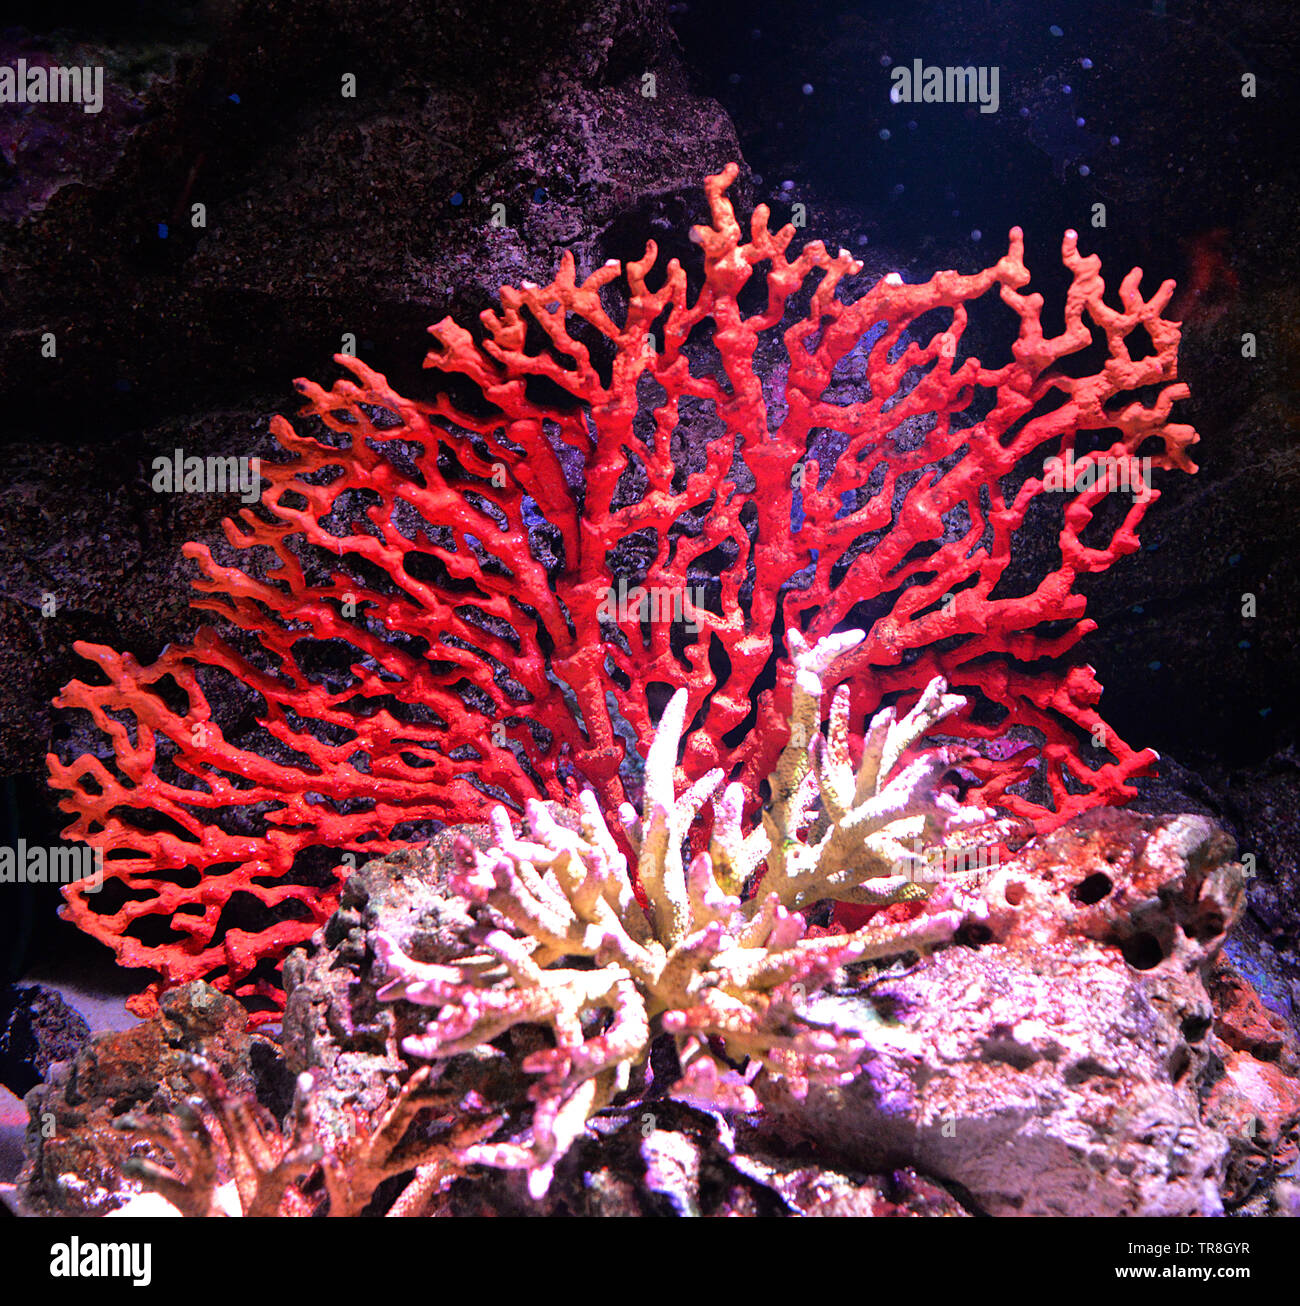 Flower sea living red coral reef growing on the rocks  marine life underwater ocean Stock Photo